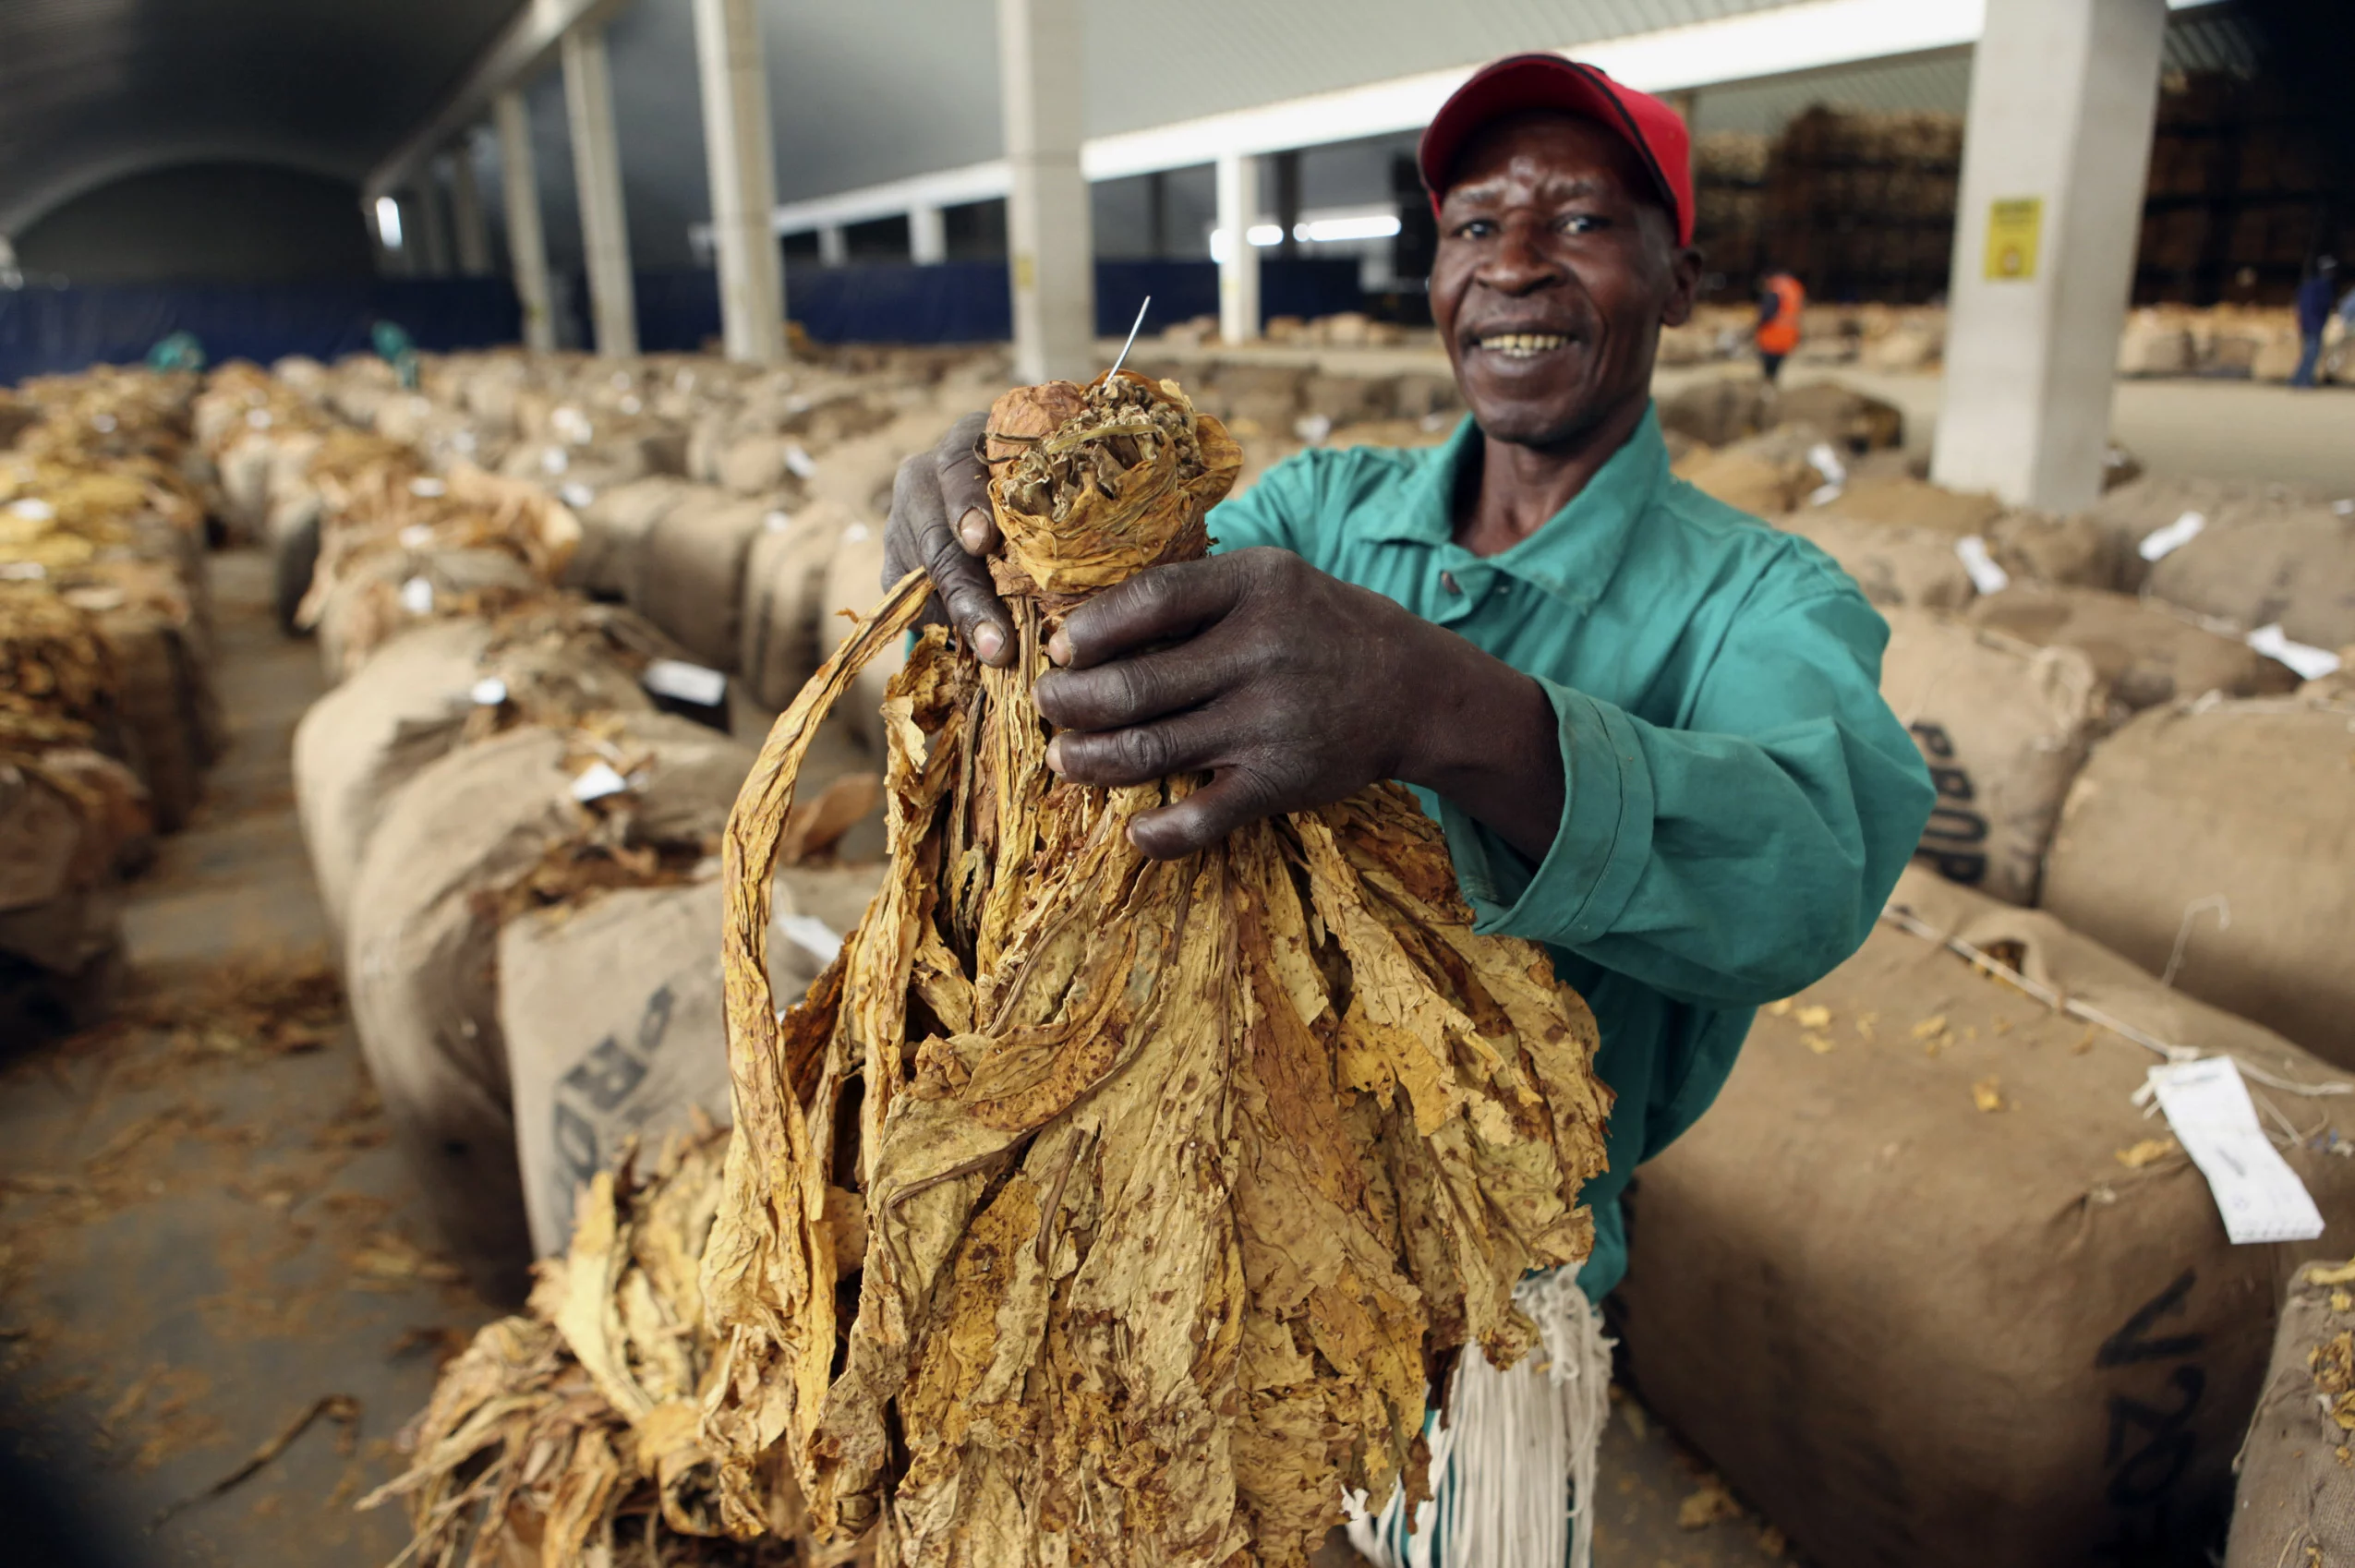 Zimbabwe’s tobacco exports yields $1 billion